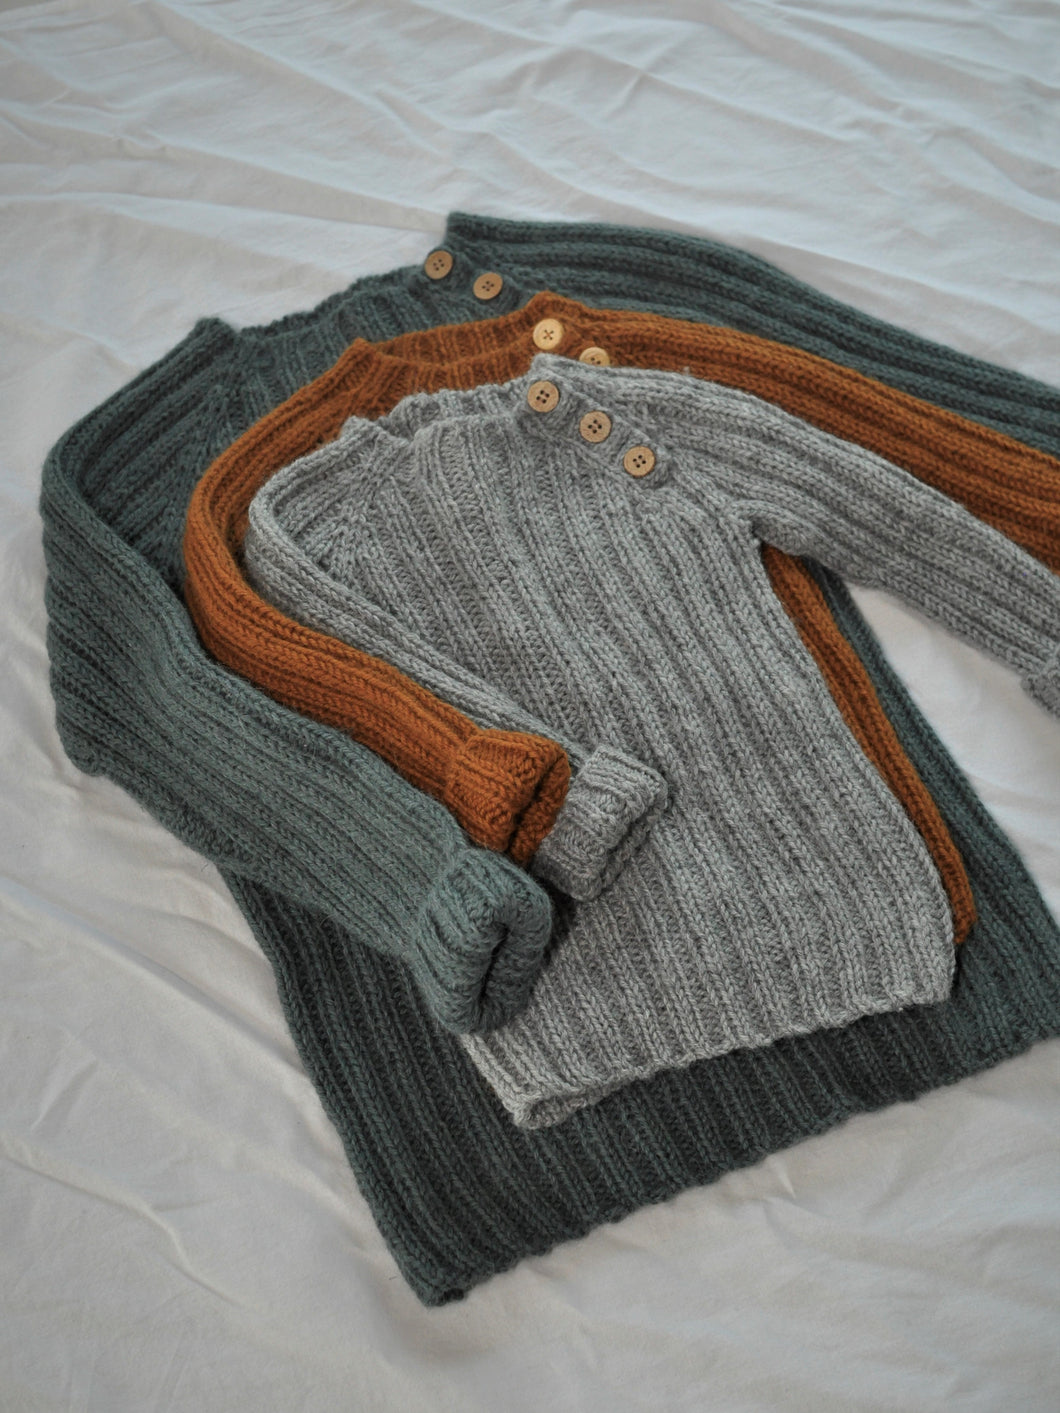 Year-round sweater